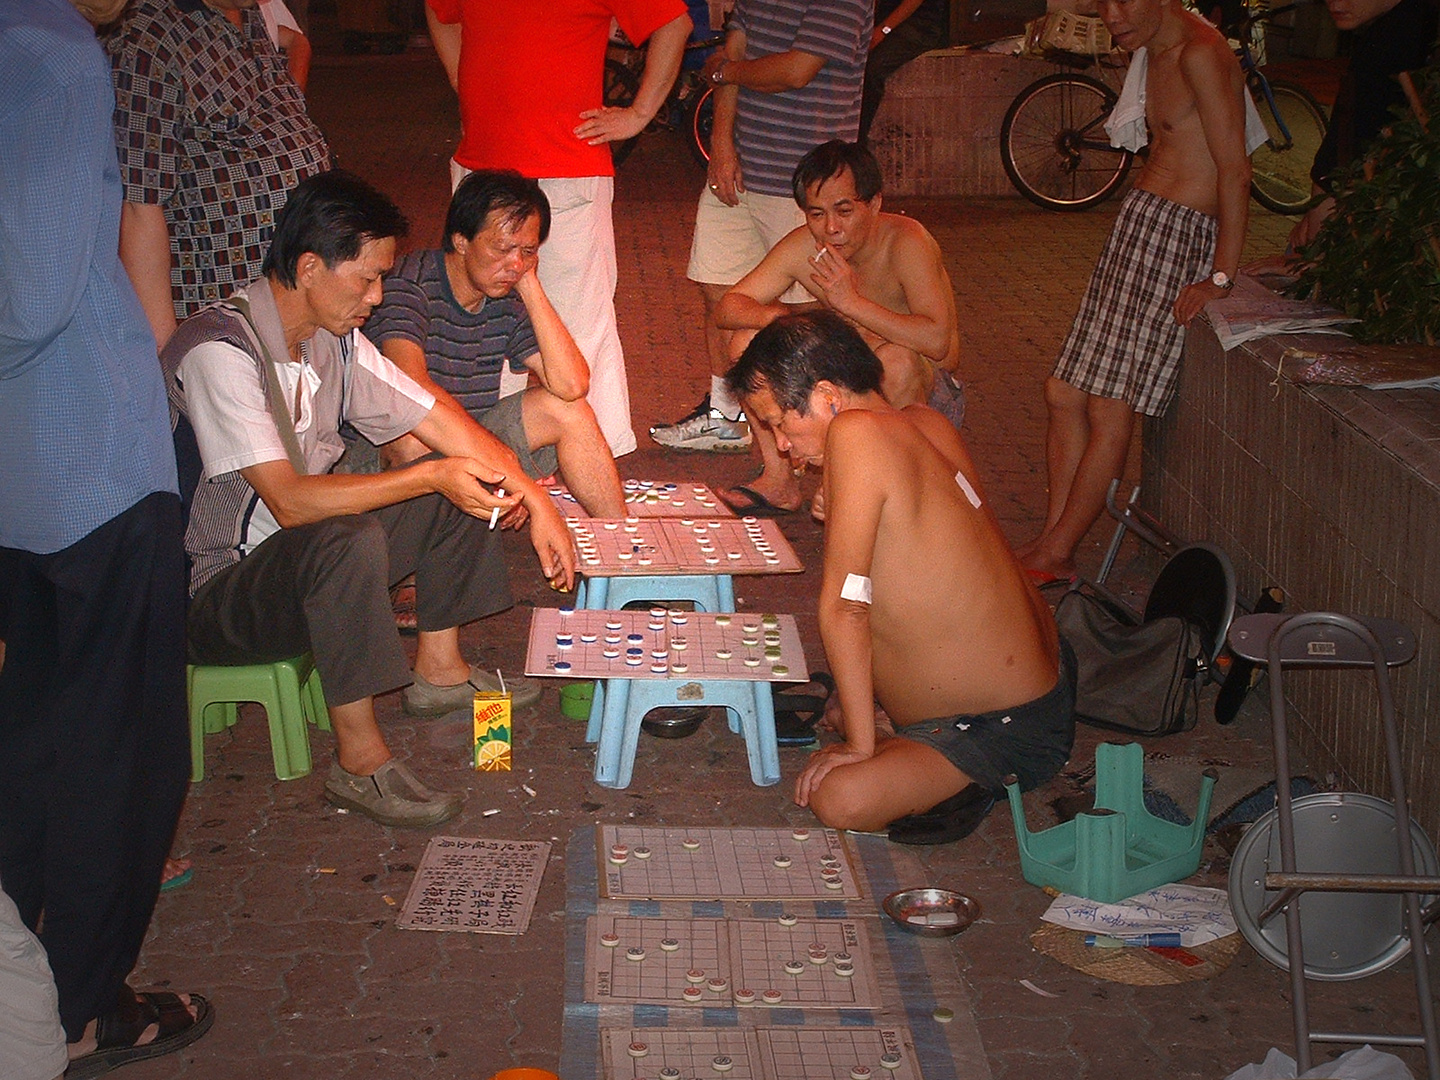 Abendliches Brettspiel auf Honkongs Straßen